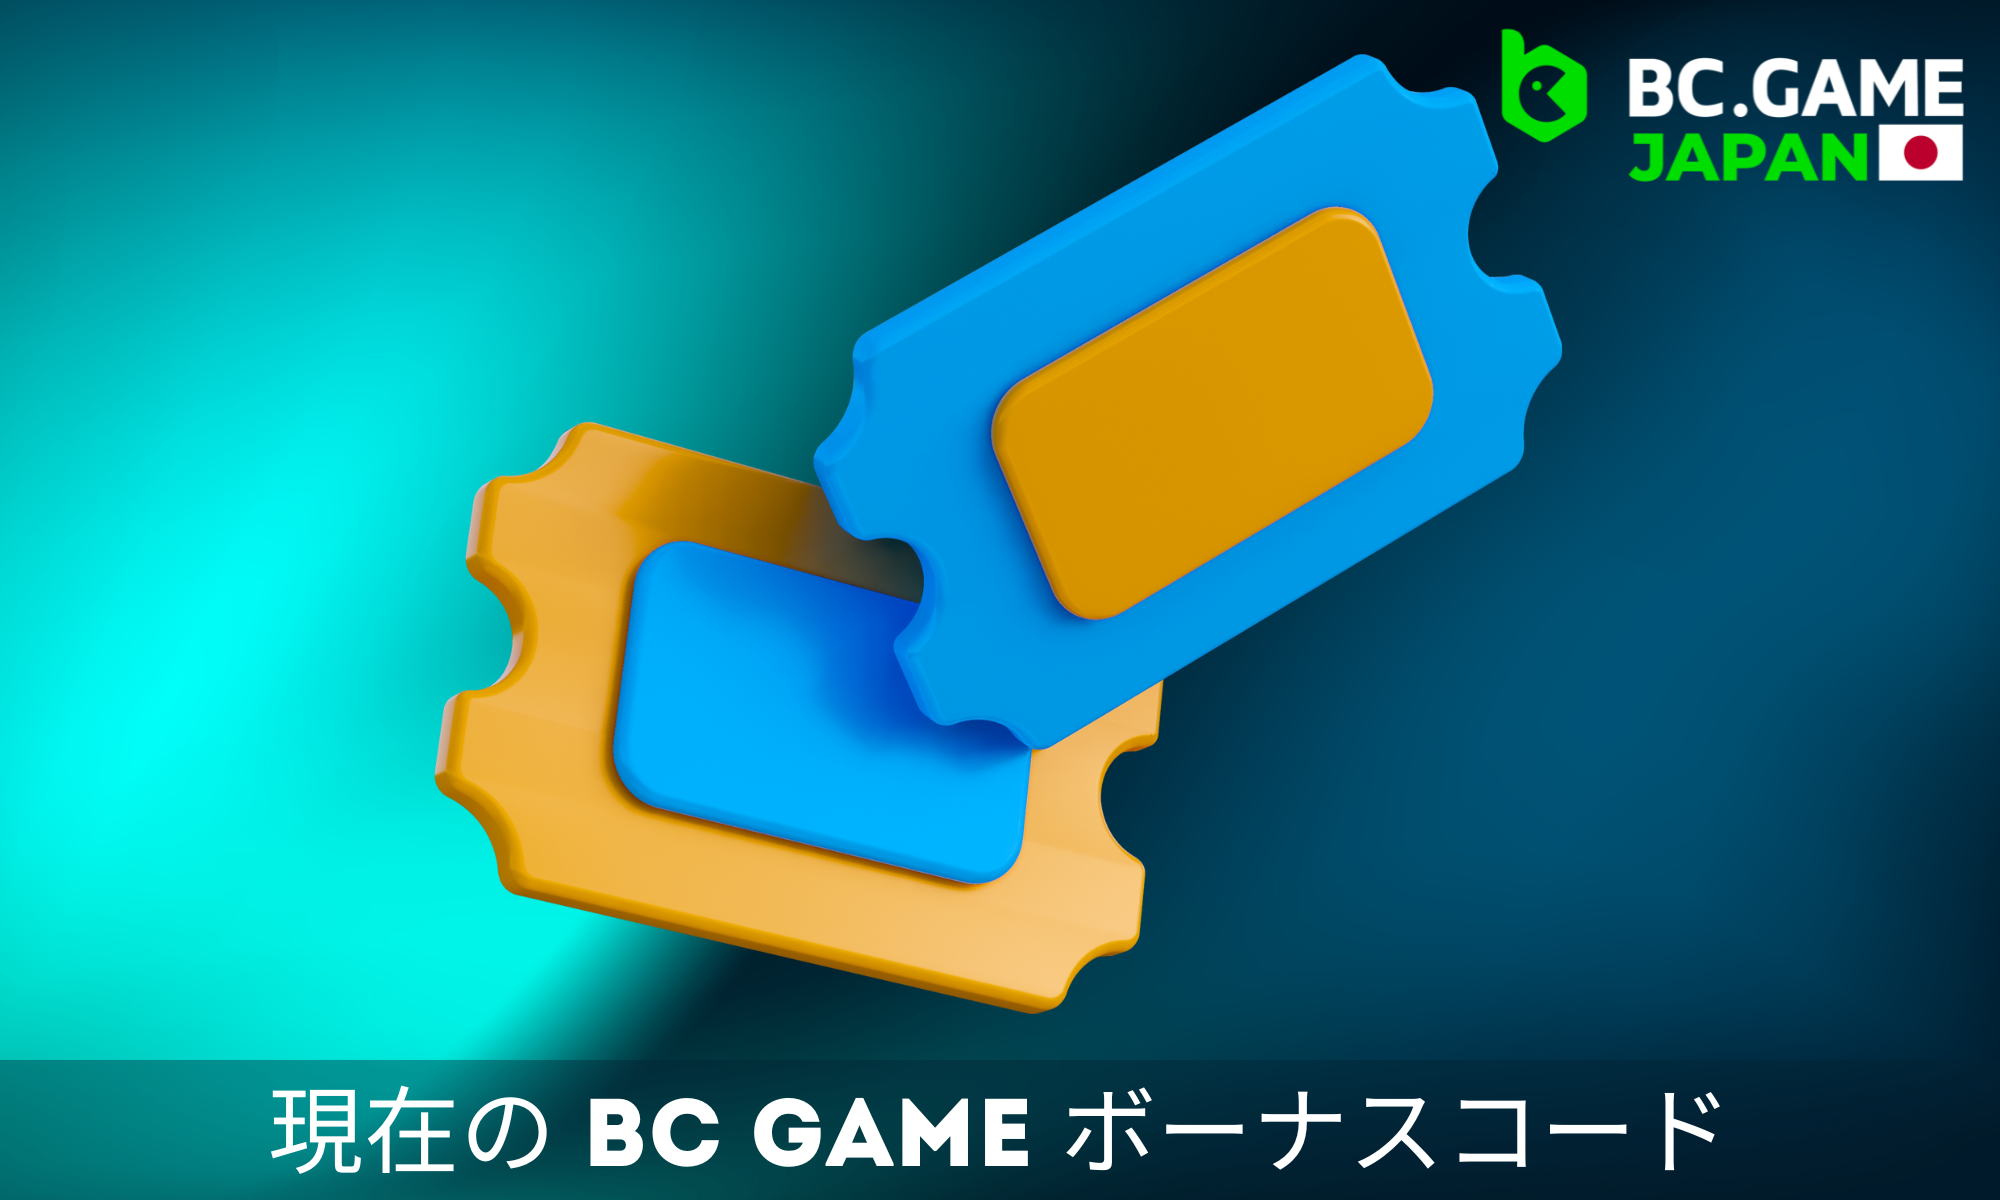 BC.Gameコードによる特典は、プレイヤーにユニークなアドバンテージを与えます。